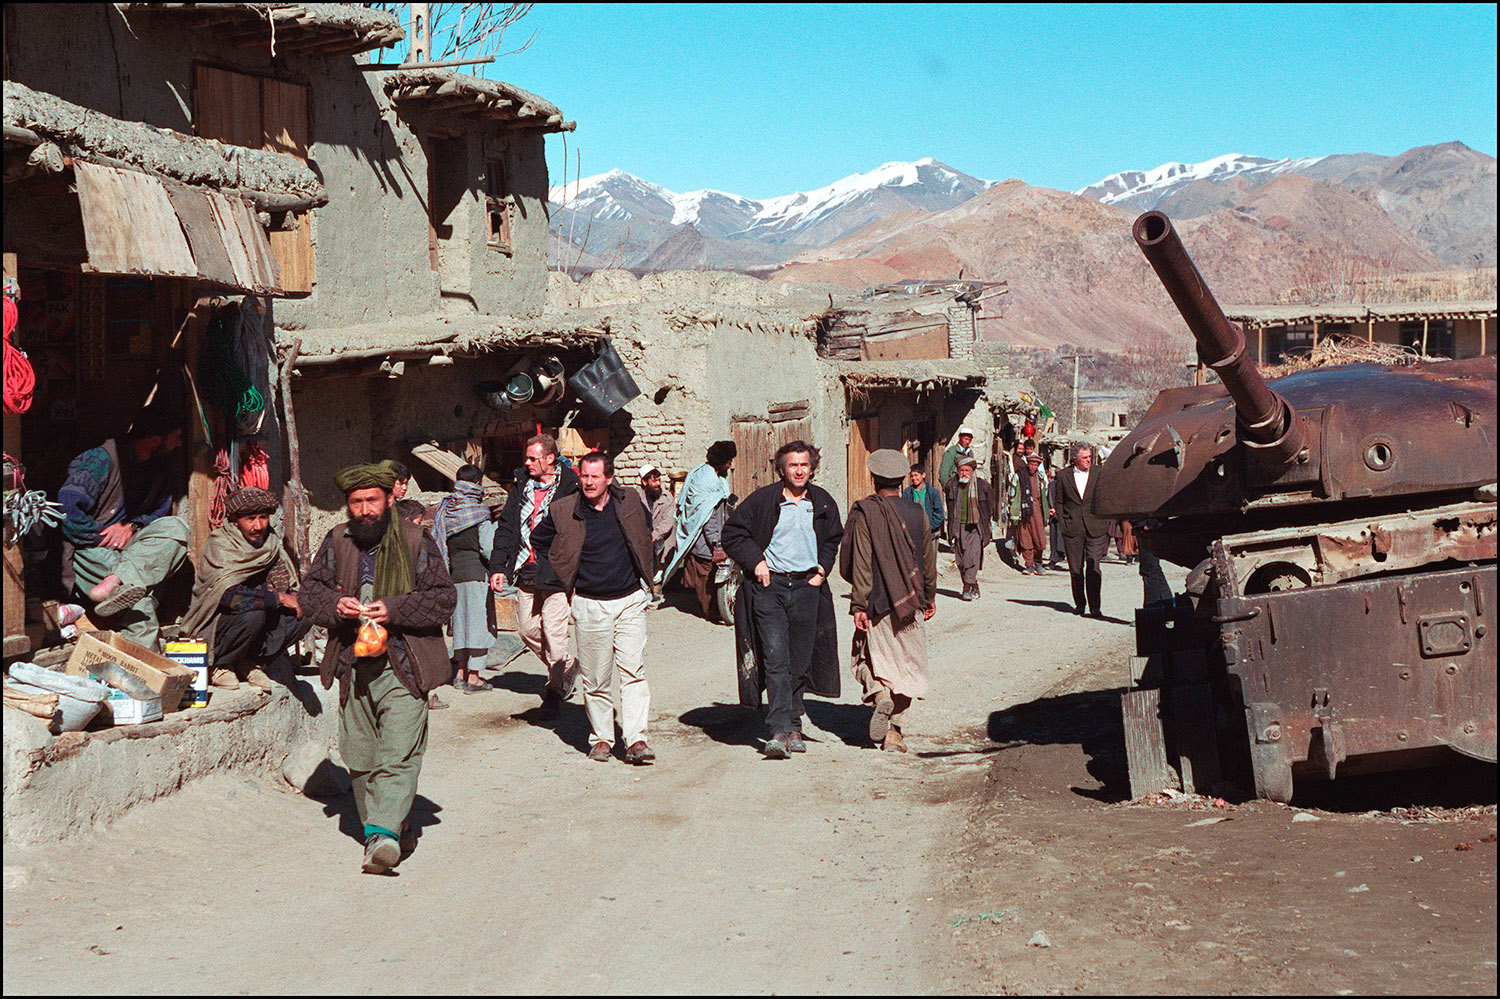 Bernard-Henri Lévy marche dans un village, sur la route de Bamiyan, avec Gilles Hertzog (à droite) et Frédéric Tissot (à gauche), un médecin humanitaire qui a été temporairement chargé d'affaires à l'ambassade de France à Kaboul. Il y a des maisons en terre, un canon abandonné.